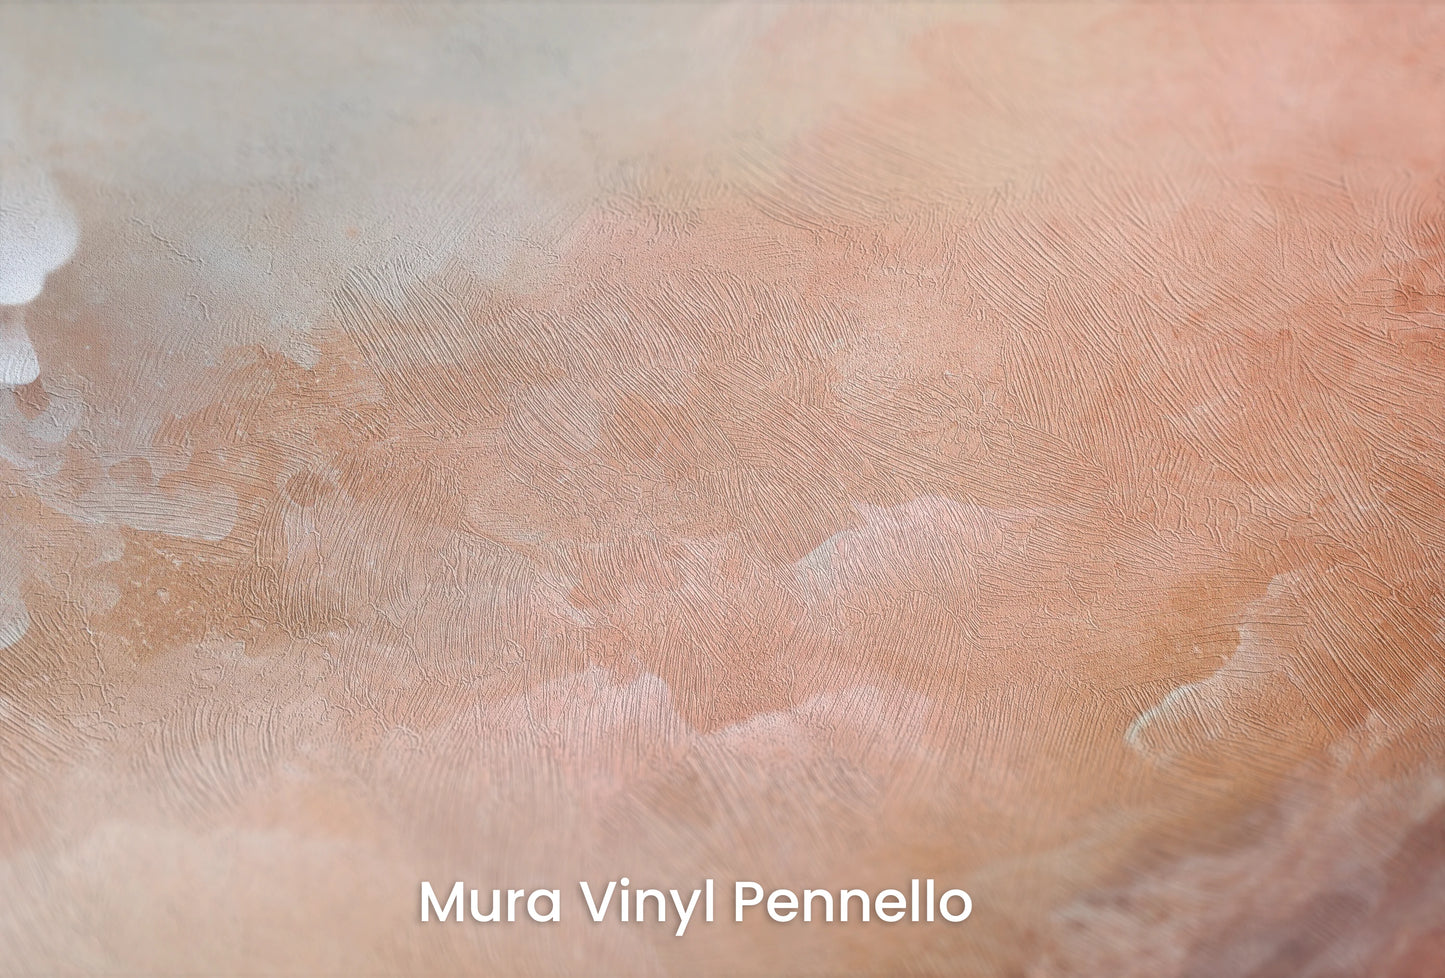 Zbliżenie na artystyczną fototapetę o nazwie Lunar Silence na podłożu Mura Vinyl Pennello - faktura pociągnięć pędzla malarskiego.